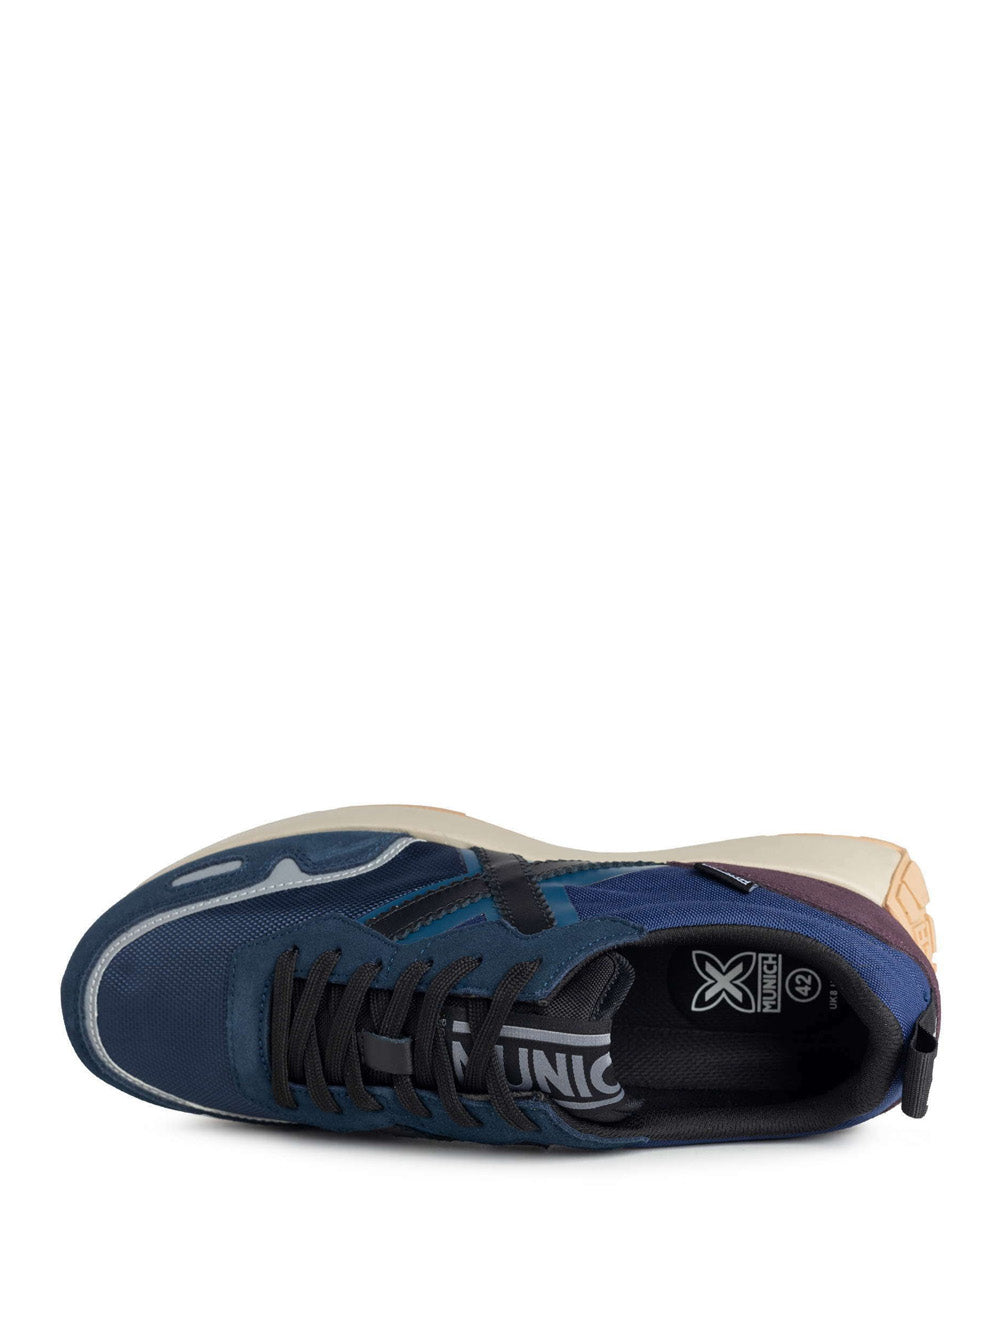 MUNICH Sneakers Uomo - Blu